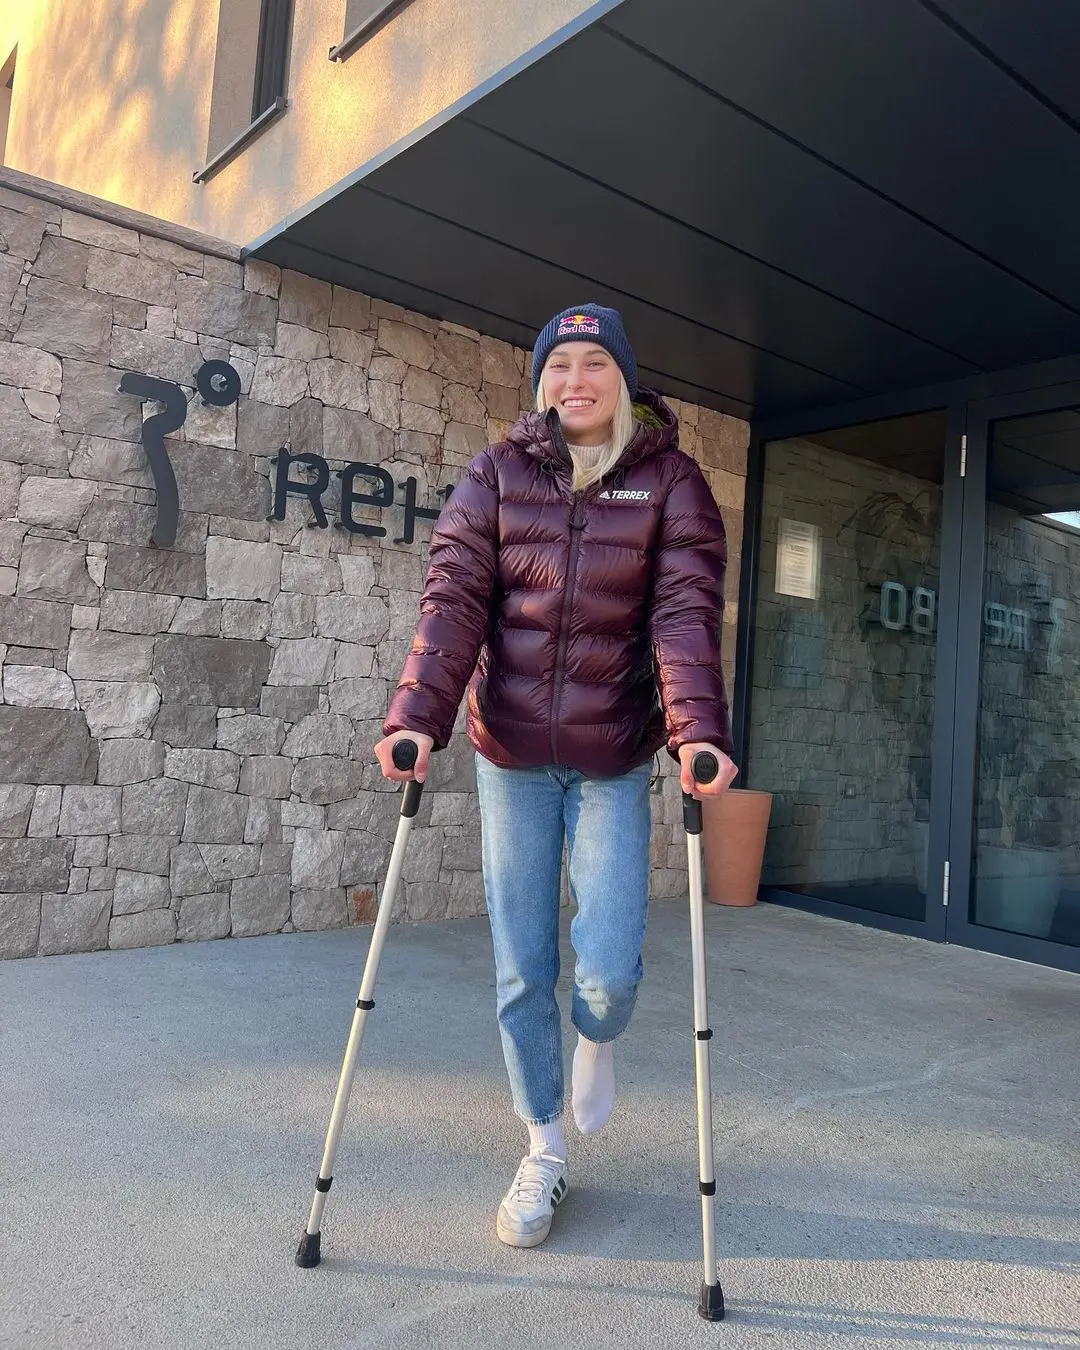 Янья Гарнбрет, без пребільшення, найкраща спортсменка-скелелазка усіх часів, нещодавно зламала великий палець лівої ноги під час тренування. 